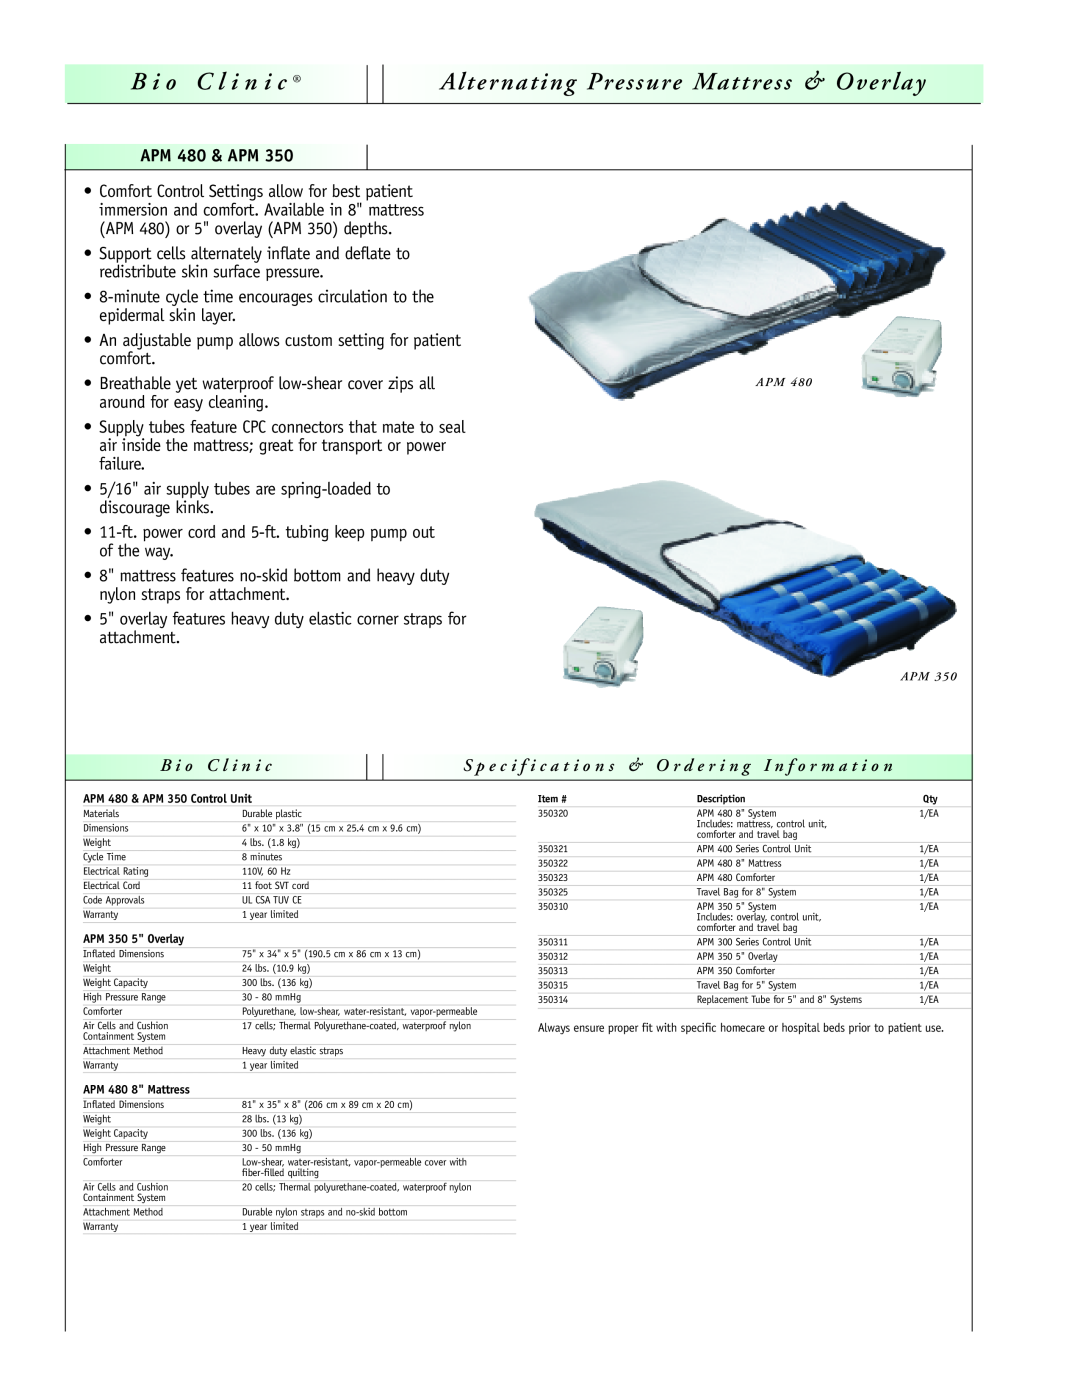 Sunrise Medical LAL 1100 manual B ioC l i ni c Alternating Pressure Mattress & Overlay, APM 480 & APM, B i o C l i n i c 